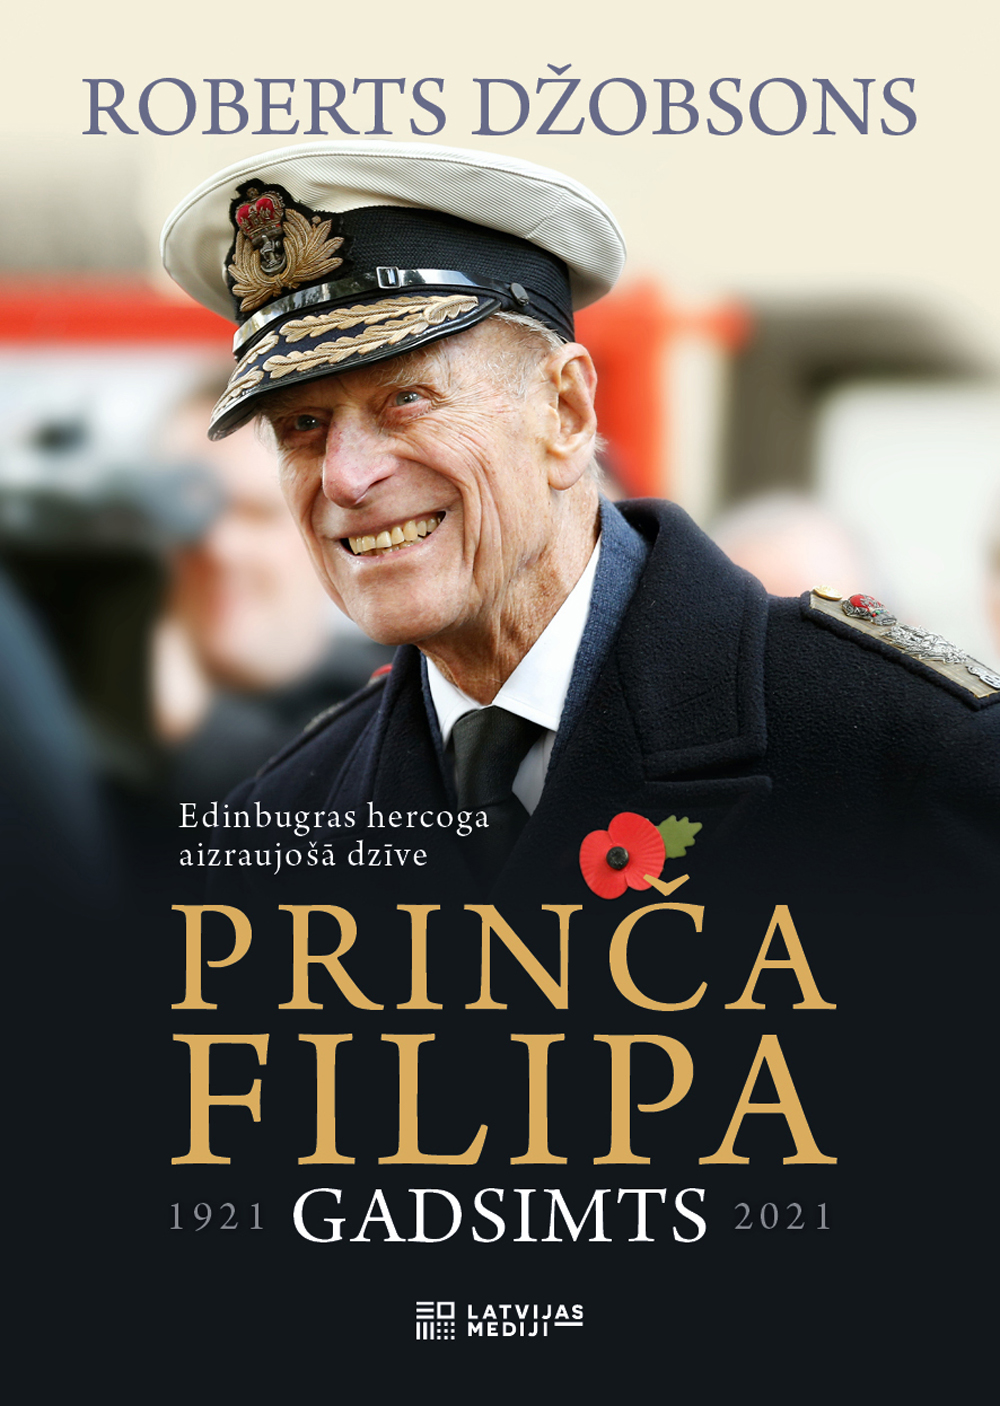 Pavisam drīz pie lasītājiem nonāks Roberta Džobsona sarakstītā biogrāfija par princi Filipu – "Prinča Filipa gadsimts". 